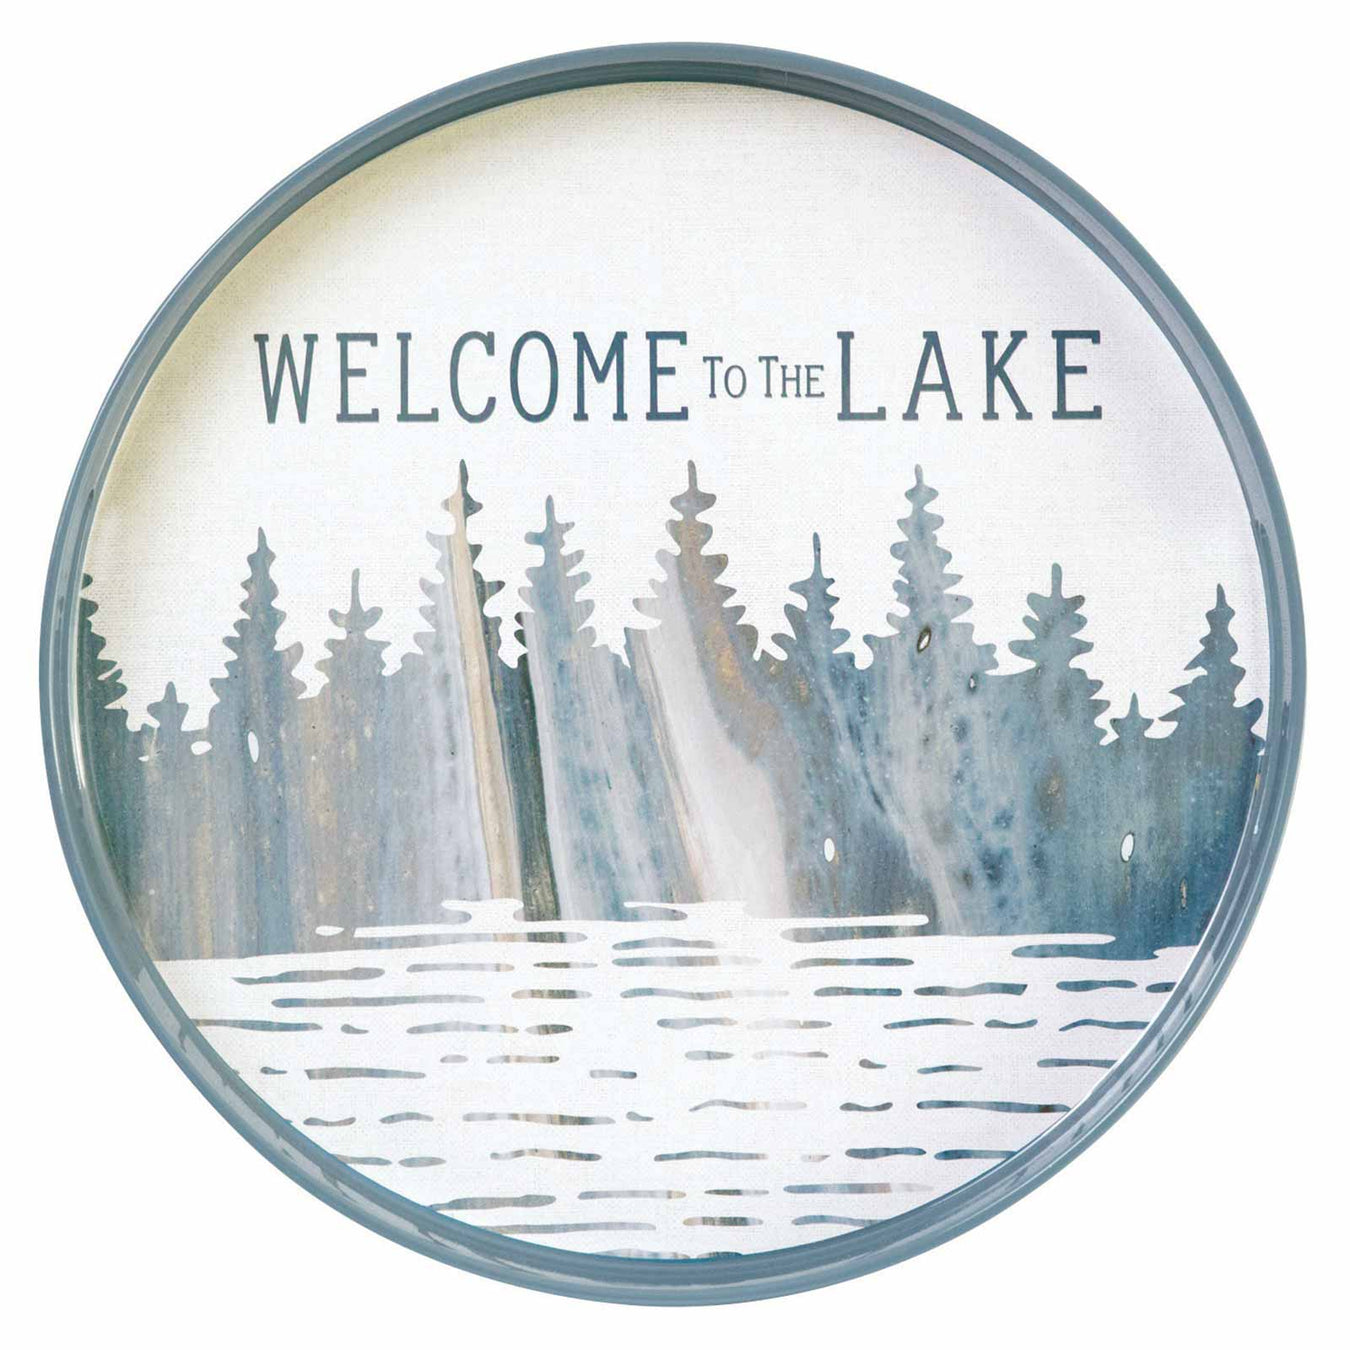 Take Me to the Lake